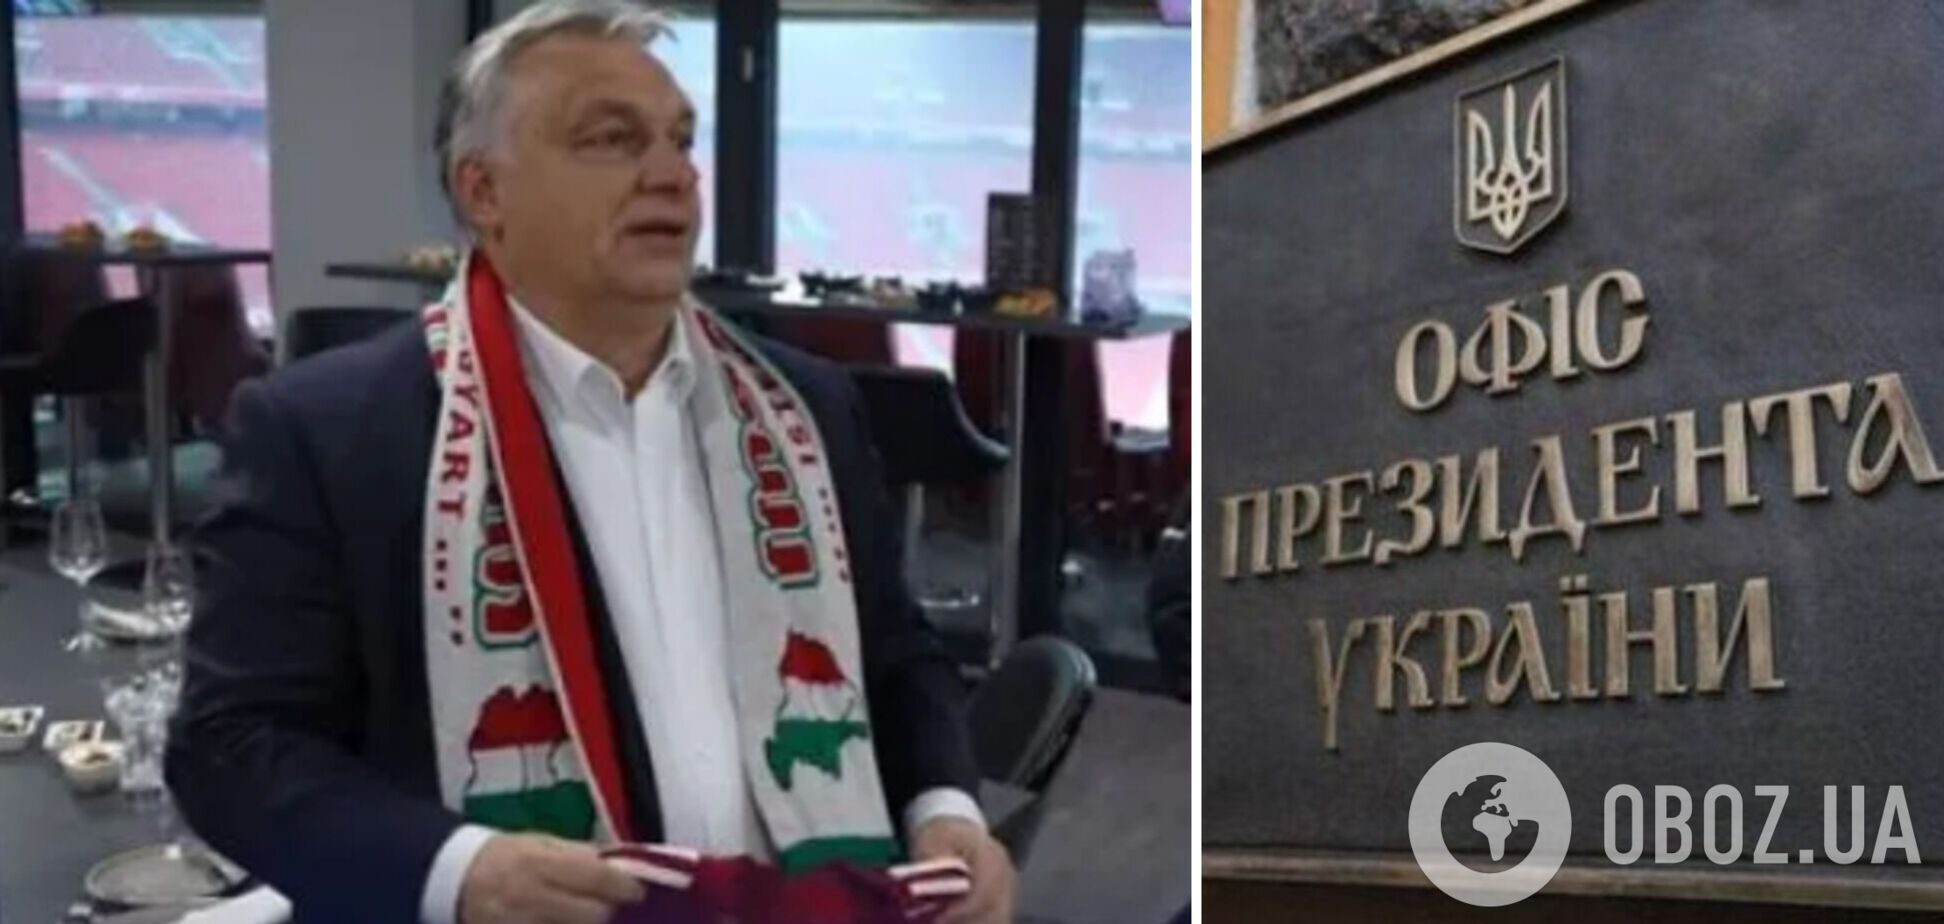 Неусвоенные уроки истории повторяются: в Офисе президента о скандале с Орбаном и картой 'Великой Венгрии'